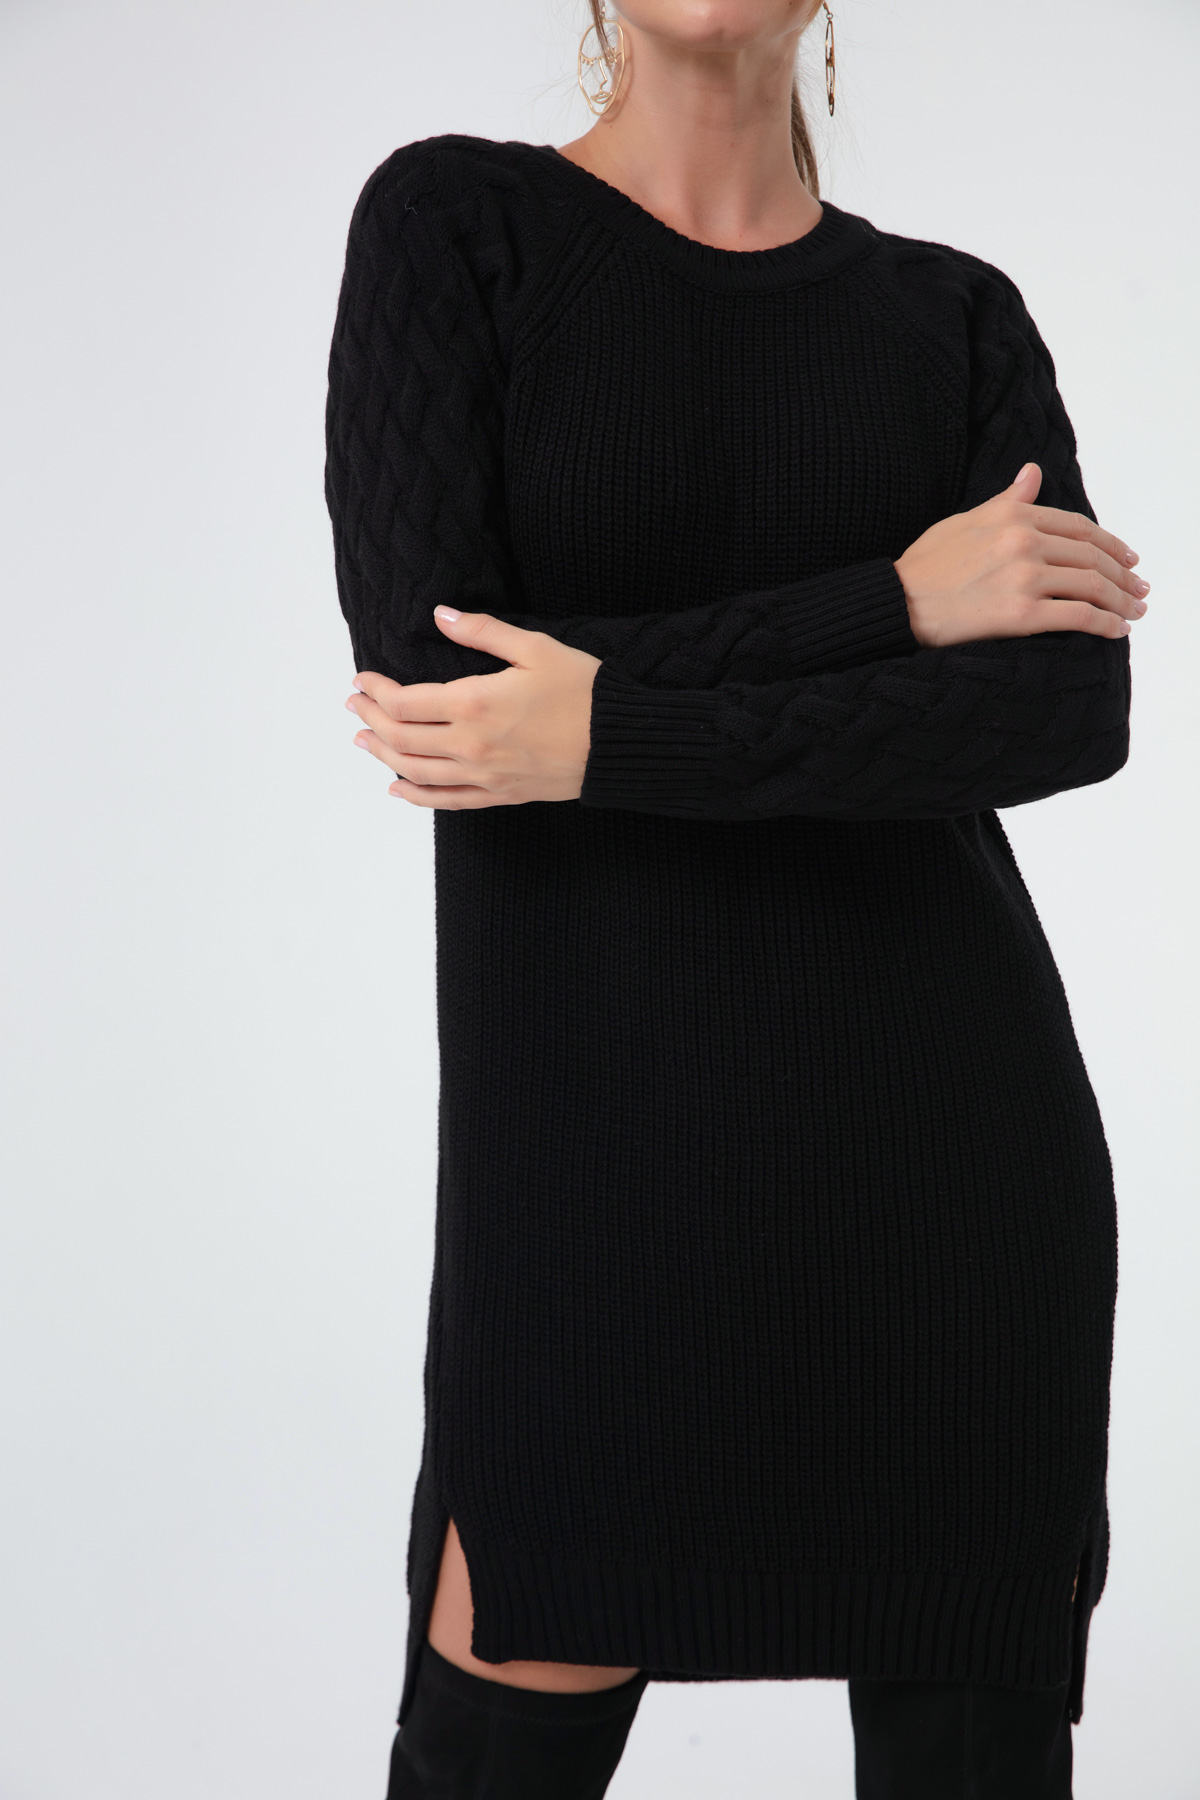 Women's Black Italian Sleeve Dress